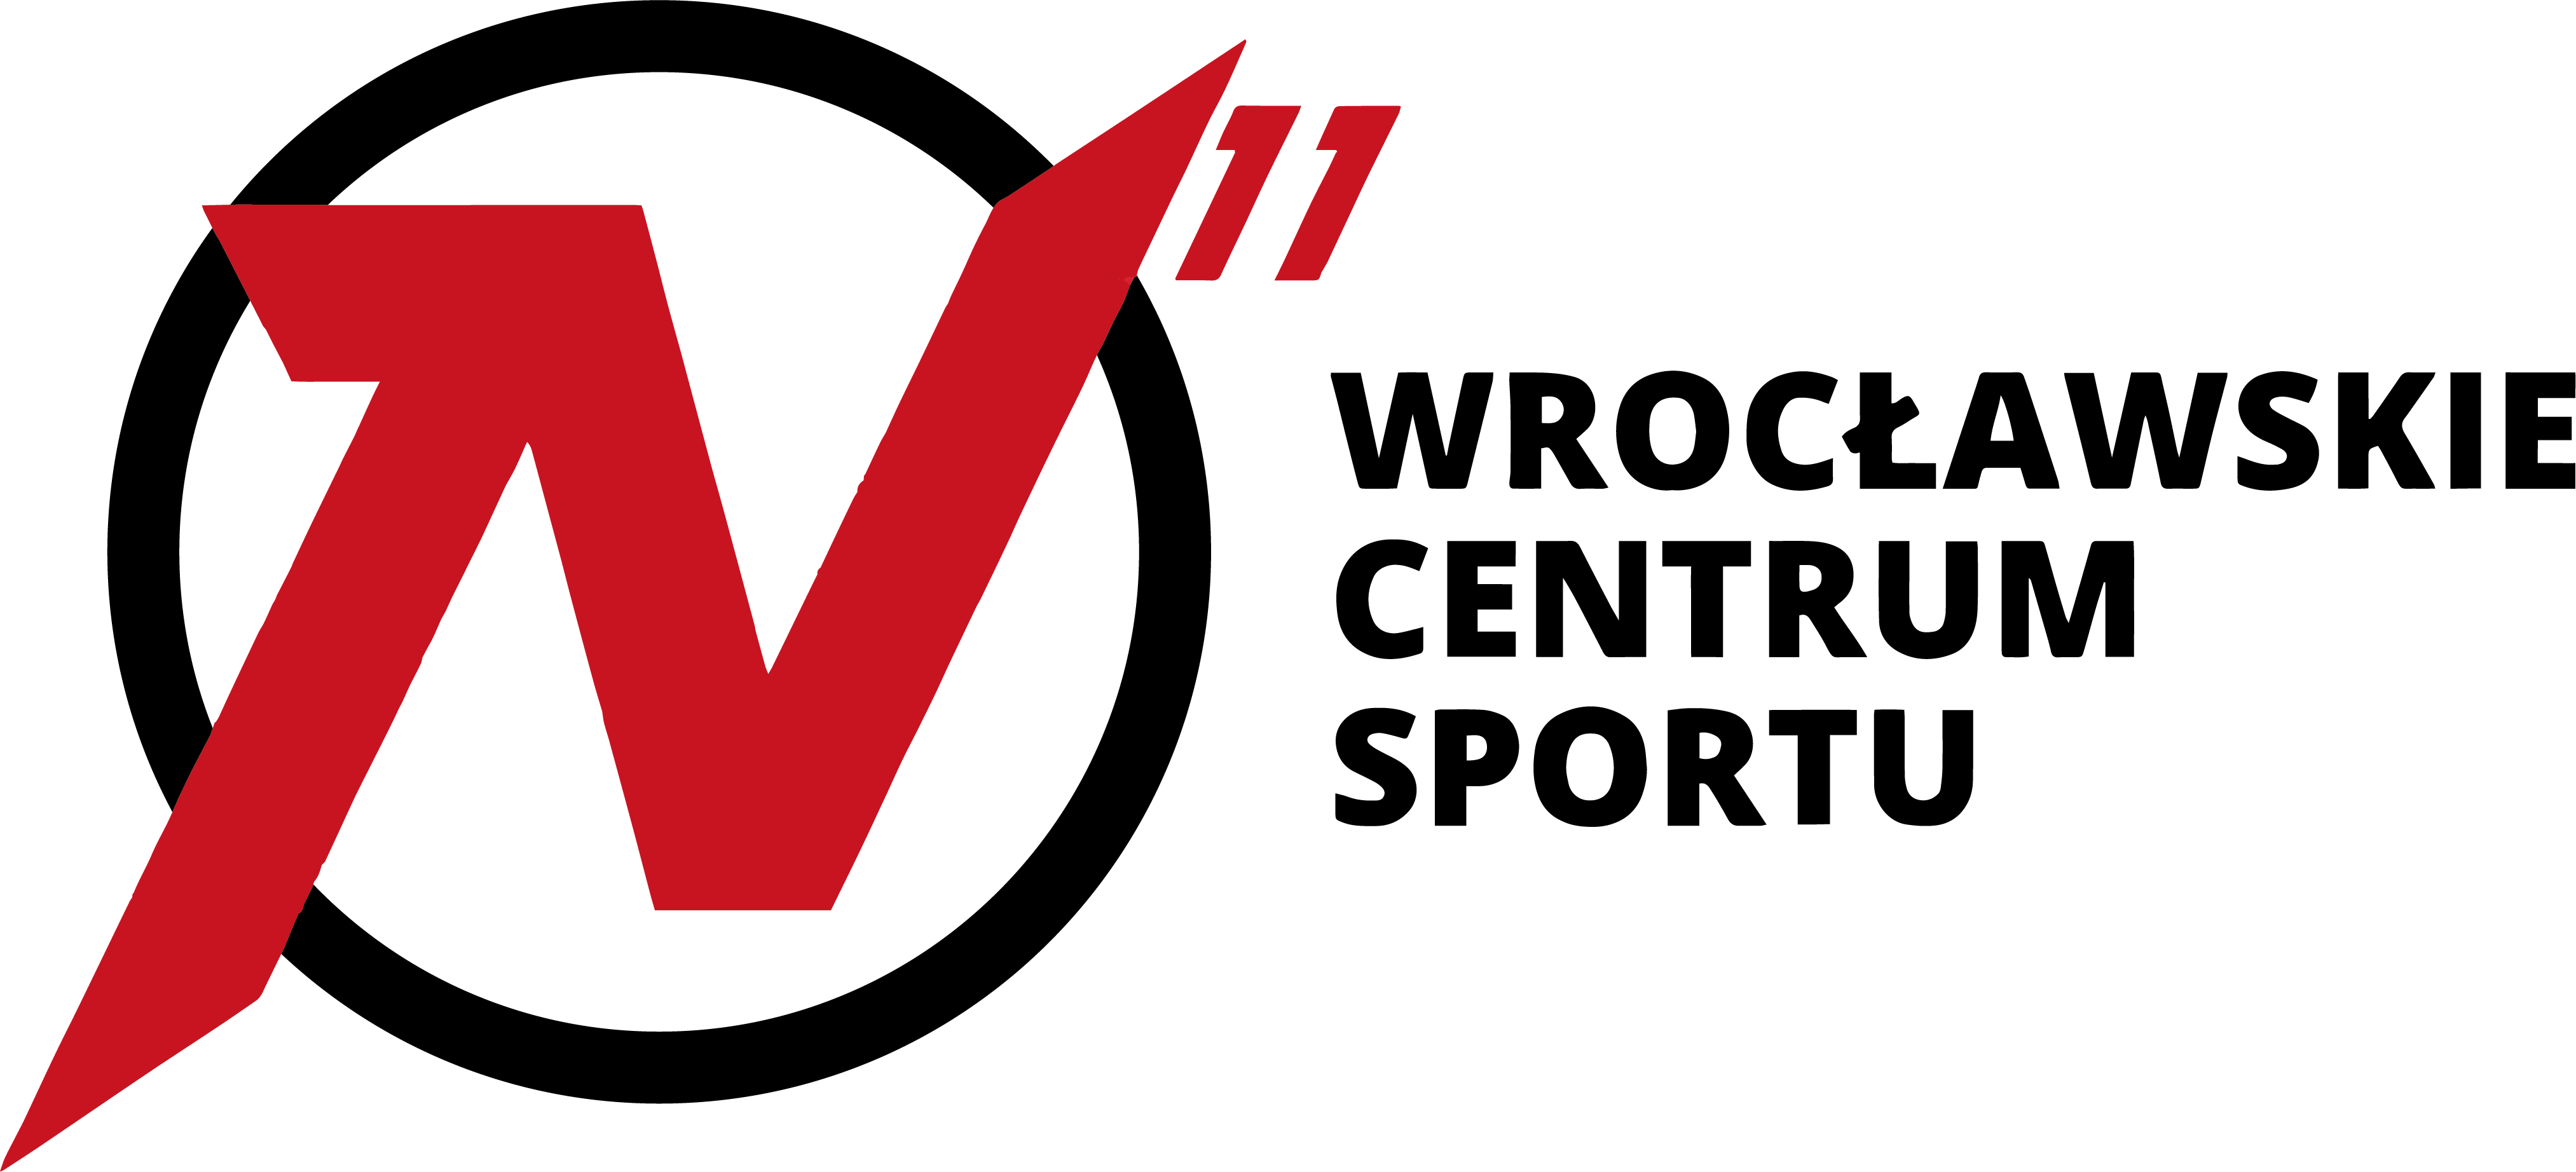 N11 Wrocławskie Centrum Sportu logo